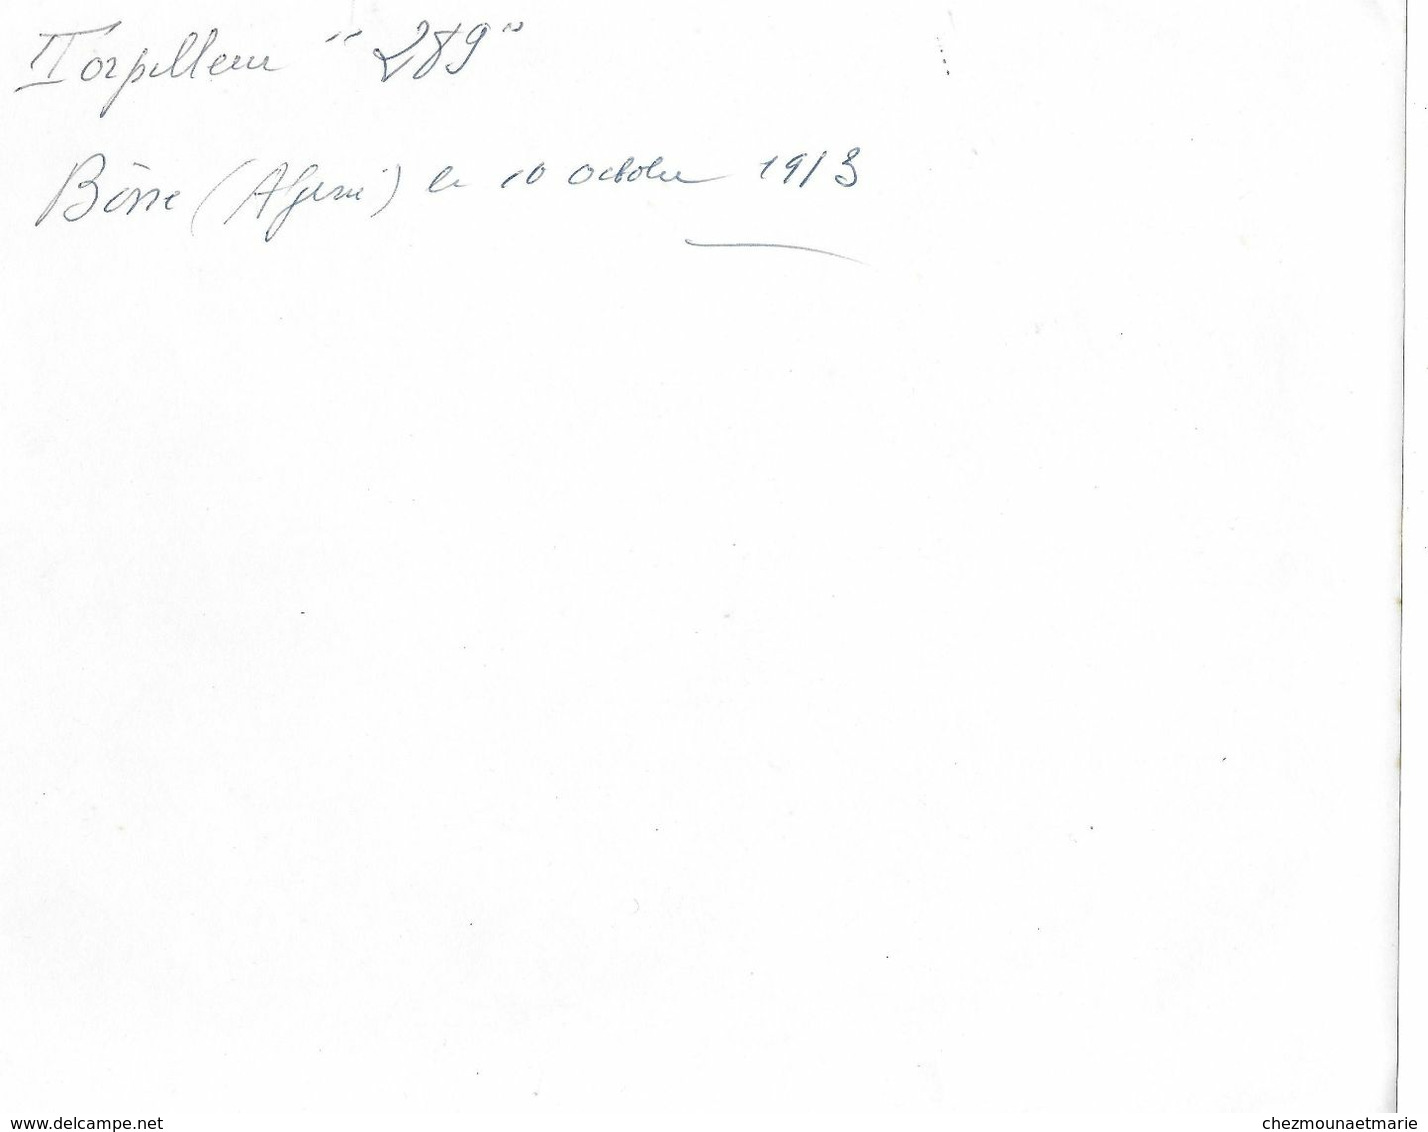 TORPILLEUR 289 BONE ALGERIE OCTOBRE 1913 - PHOTO - Bateaux